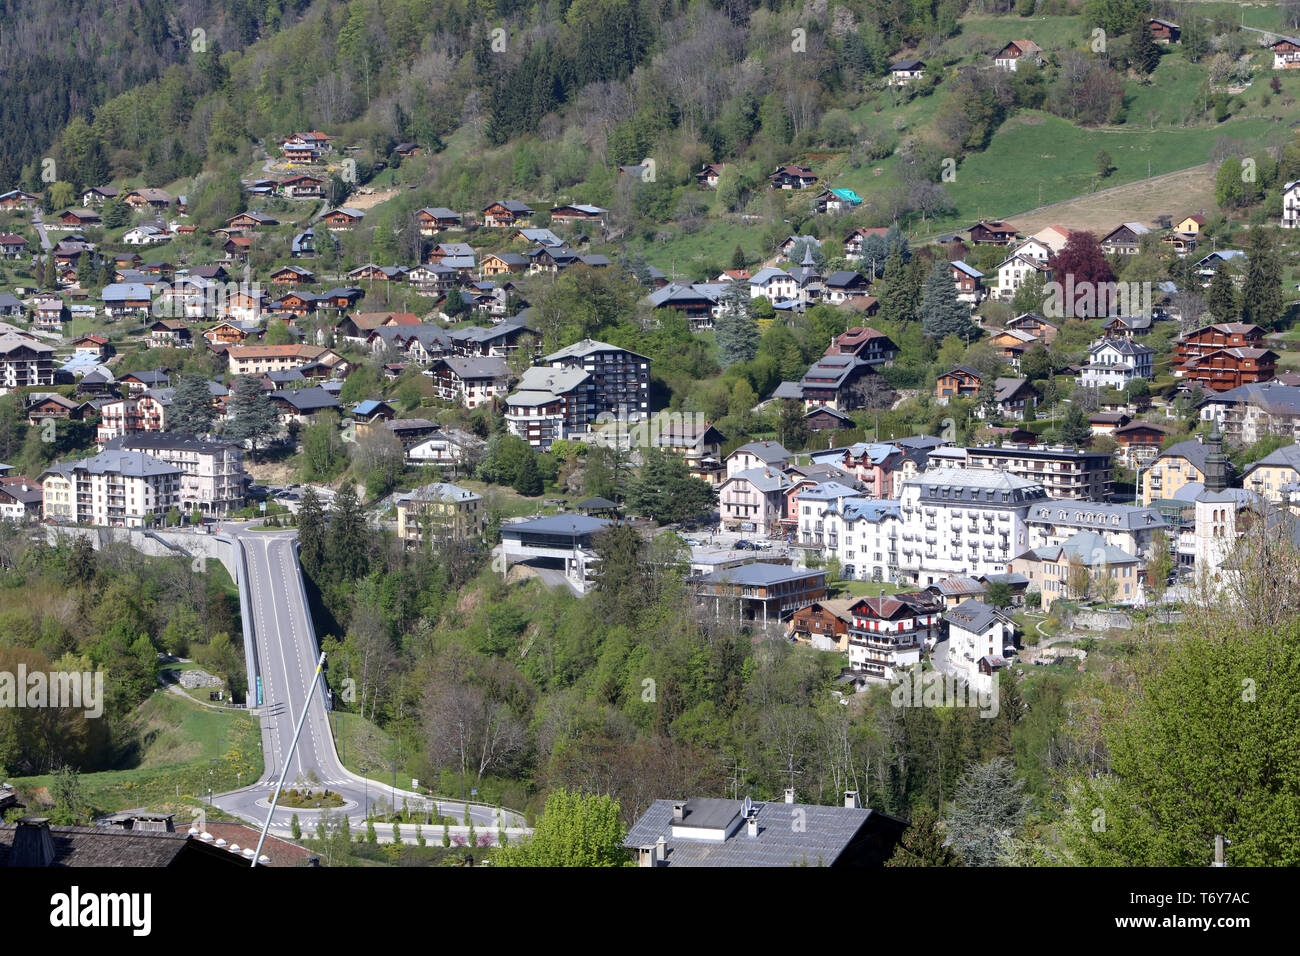 Saint-Gervais-les-Bains. Alpes Françaises. / Saint-Gervais-les-Bains villaggio. Sulle Alpi francesi. Foto Stock